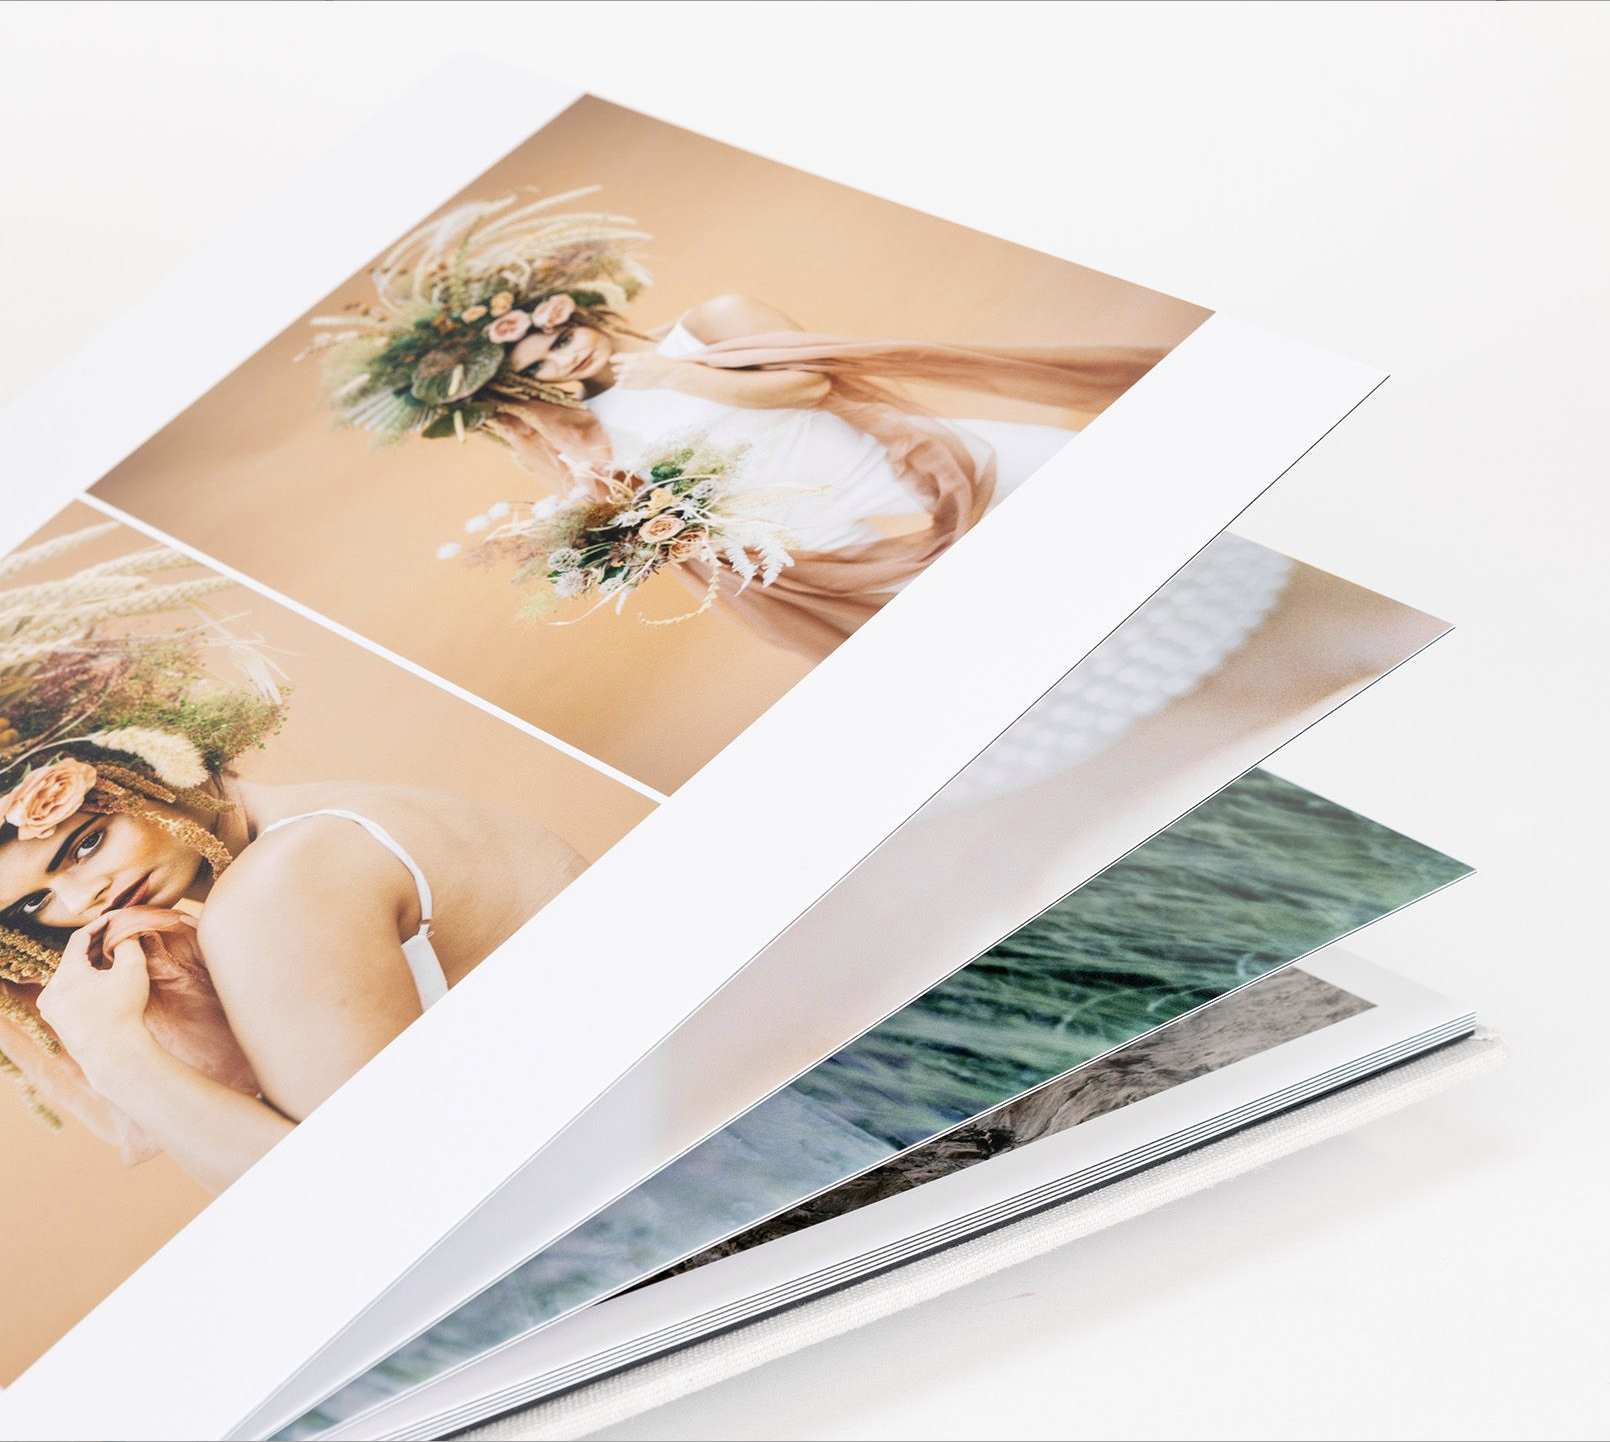 bookcloth_wedding_album1.png